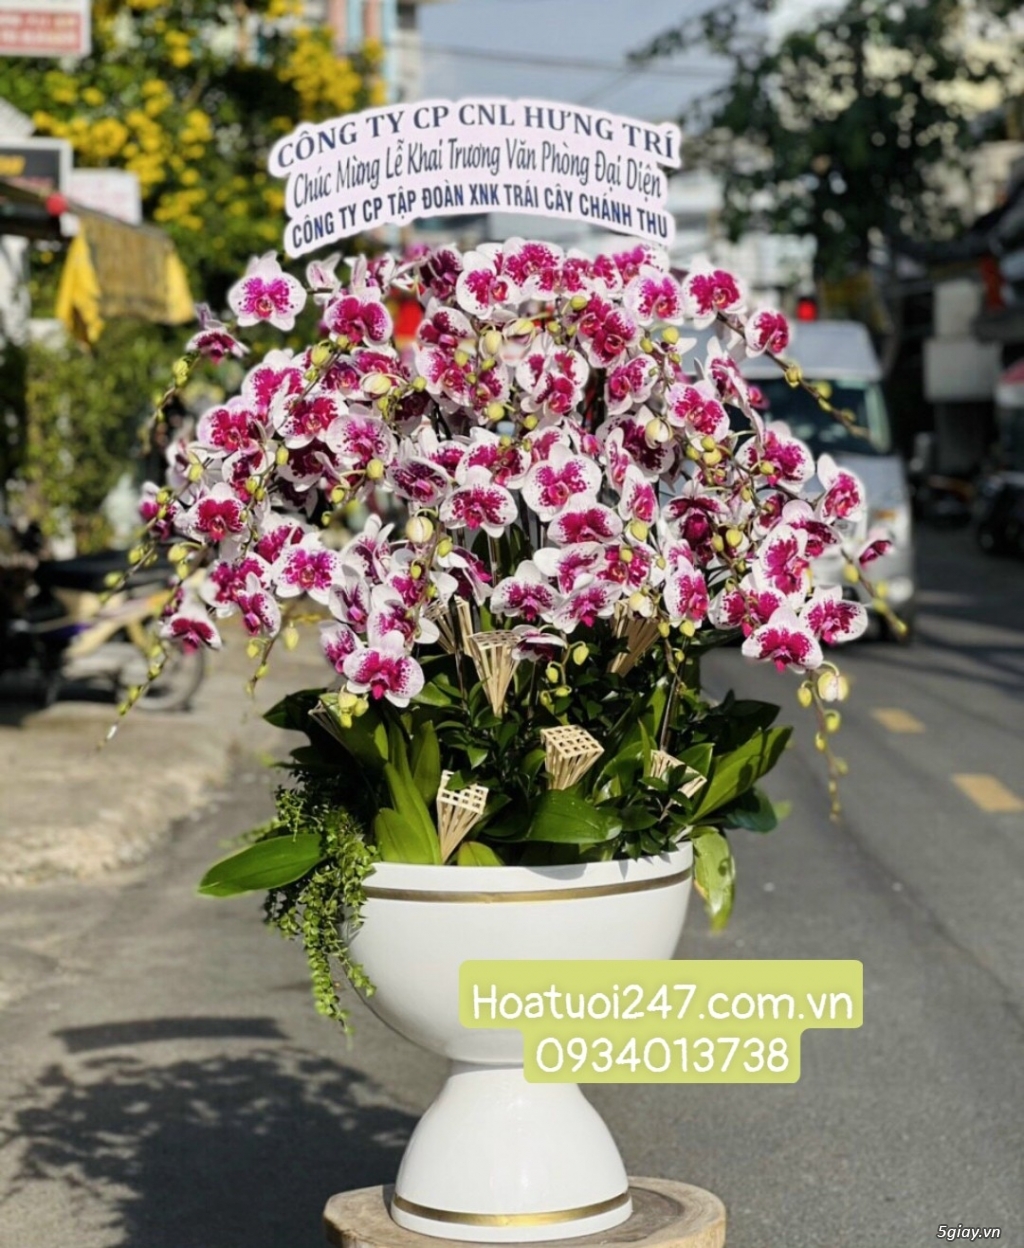 Shop hoa tươi Lan Hồ Điệp uy tín chất lượng số 1 Sài Gòn 0934013738 - 1